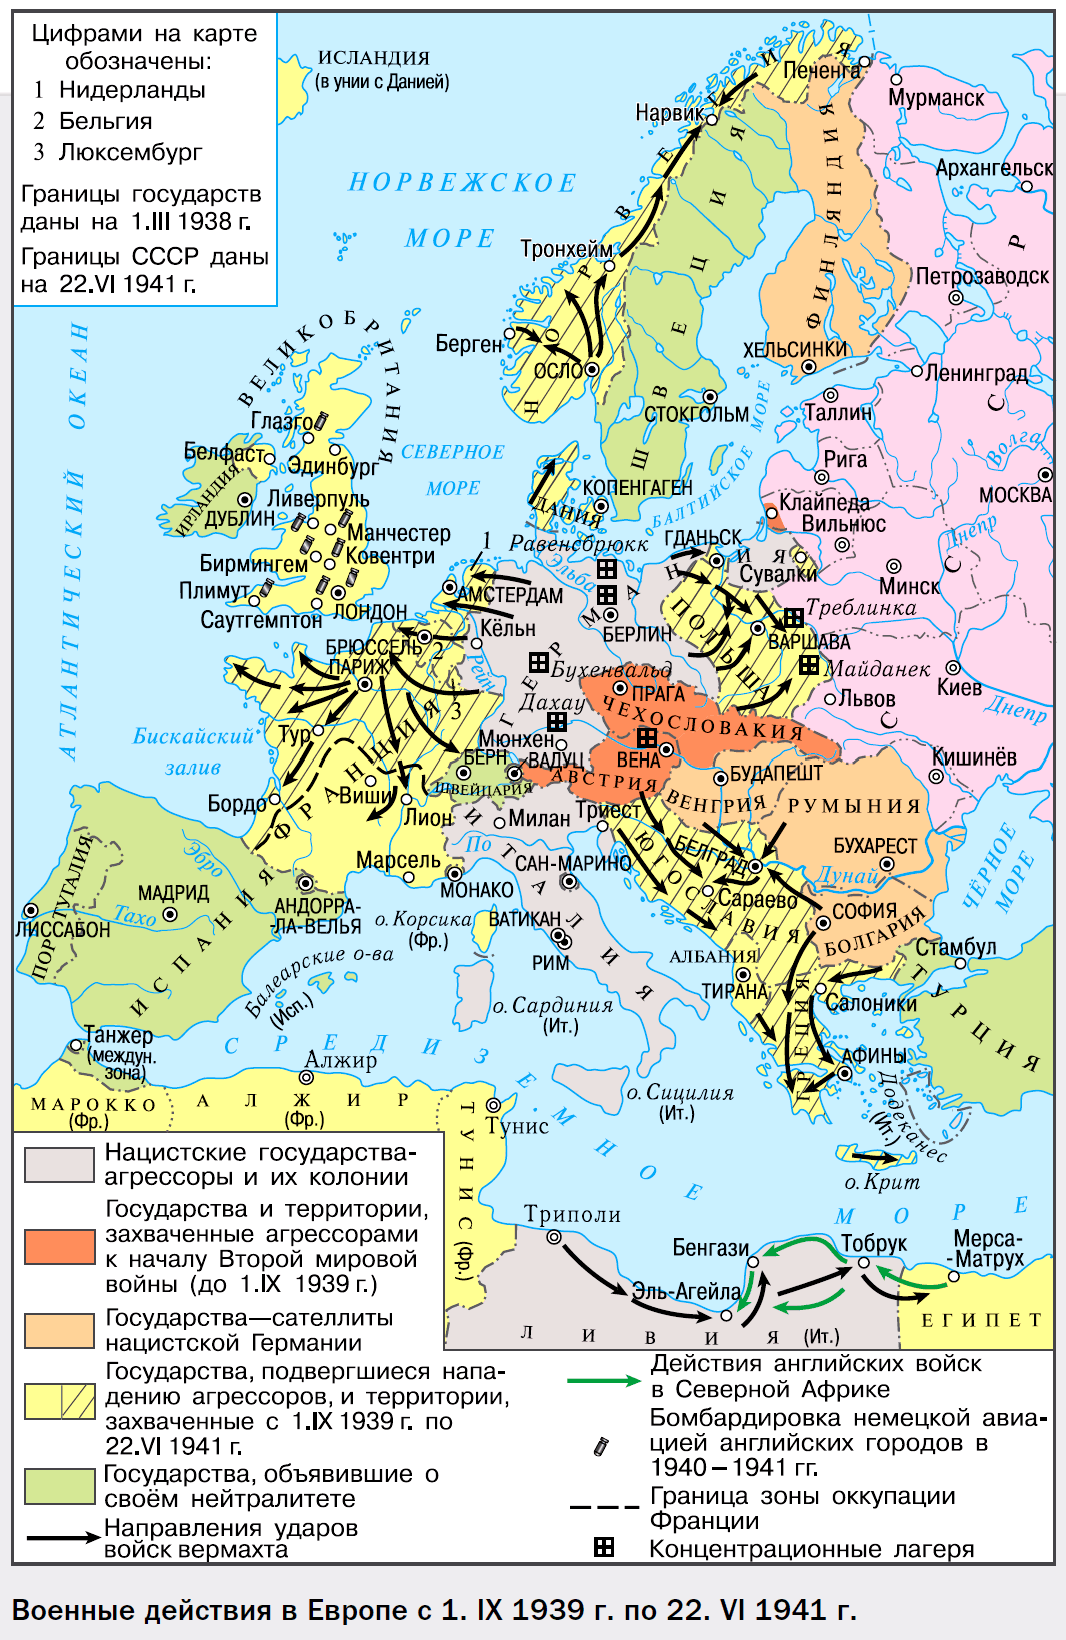 Карта. Военные действия в Европе с 1.IX 1939 г. по 22.VI 1941 г.